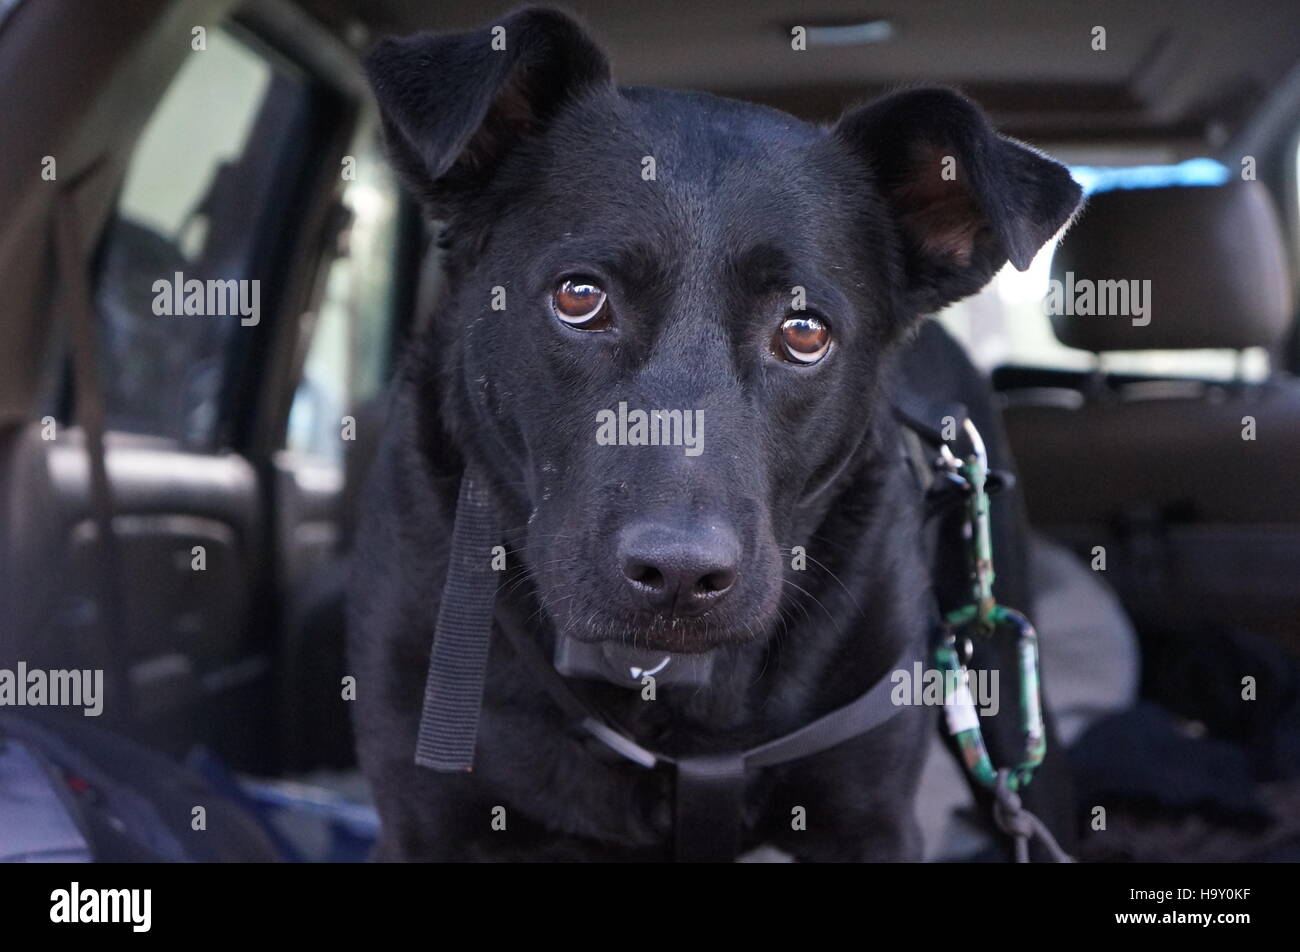 Black dog inquisitive eyes Stock Photo